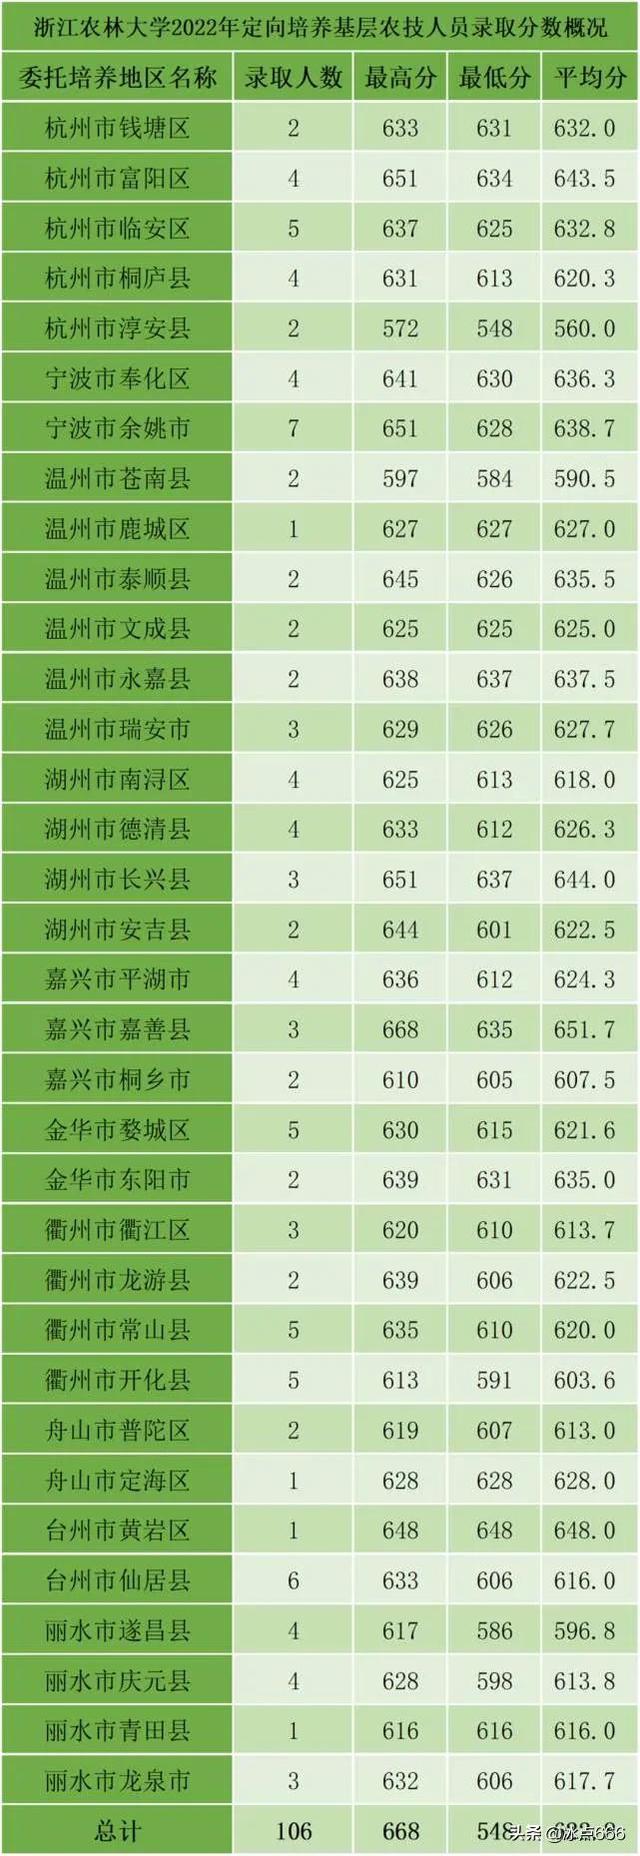 668分的浙江考生缘何放弃众多985，报考了双非的浙江农林大学